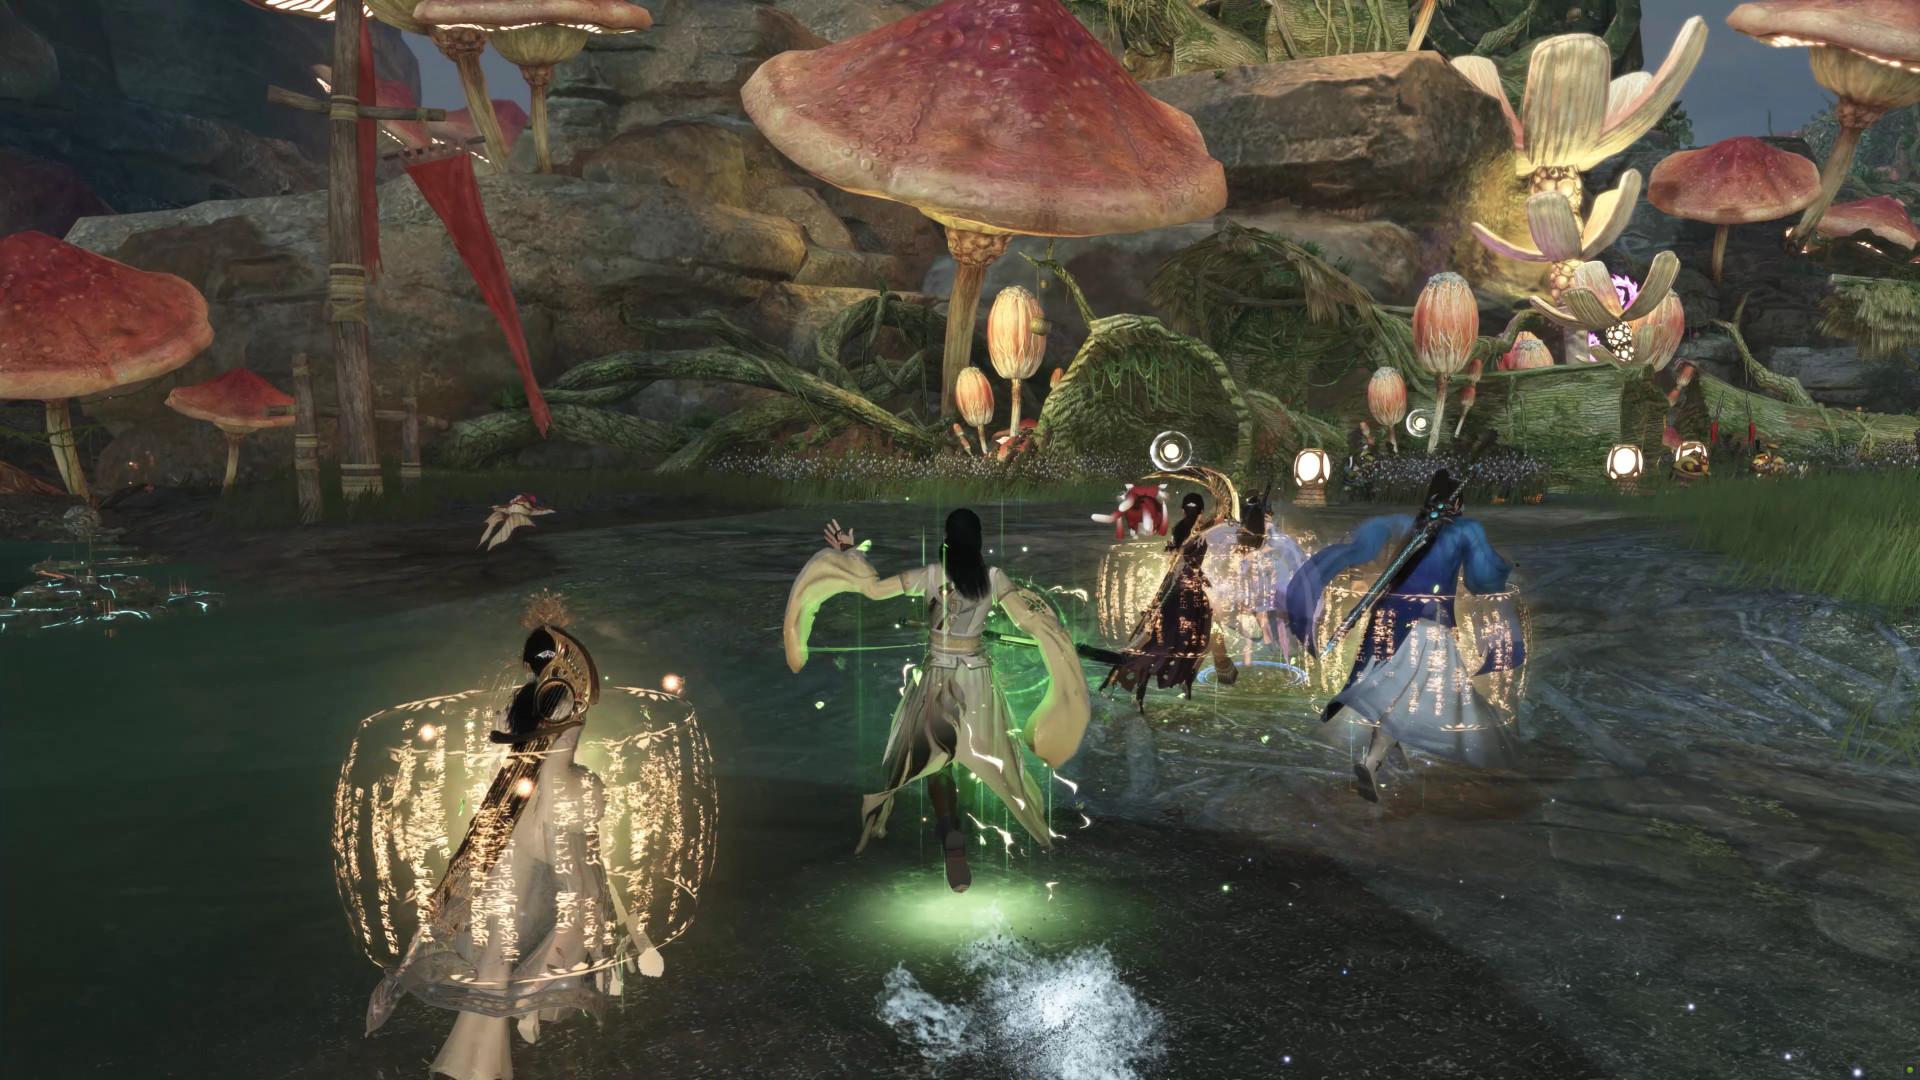 Screenshot №14 from game Swords of Legends Online